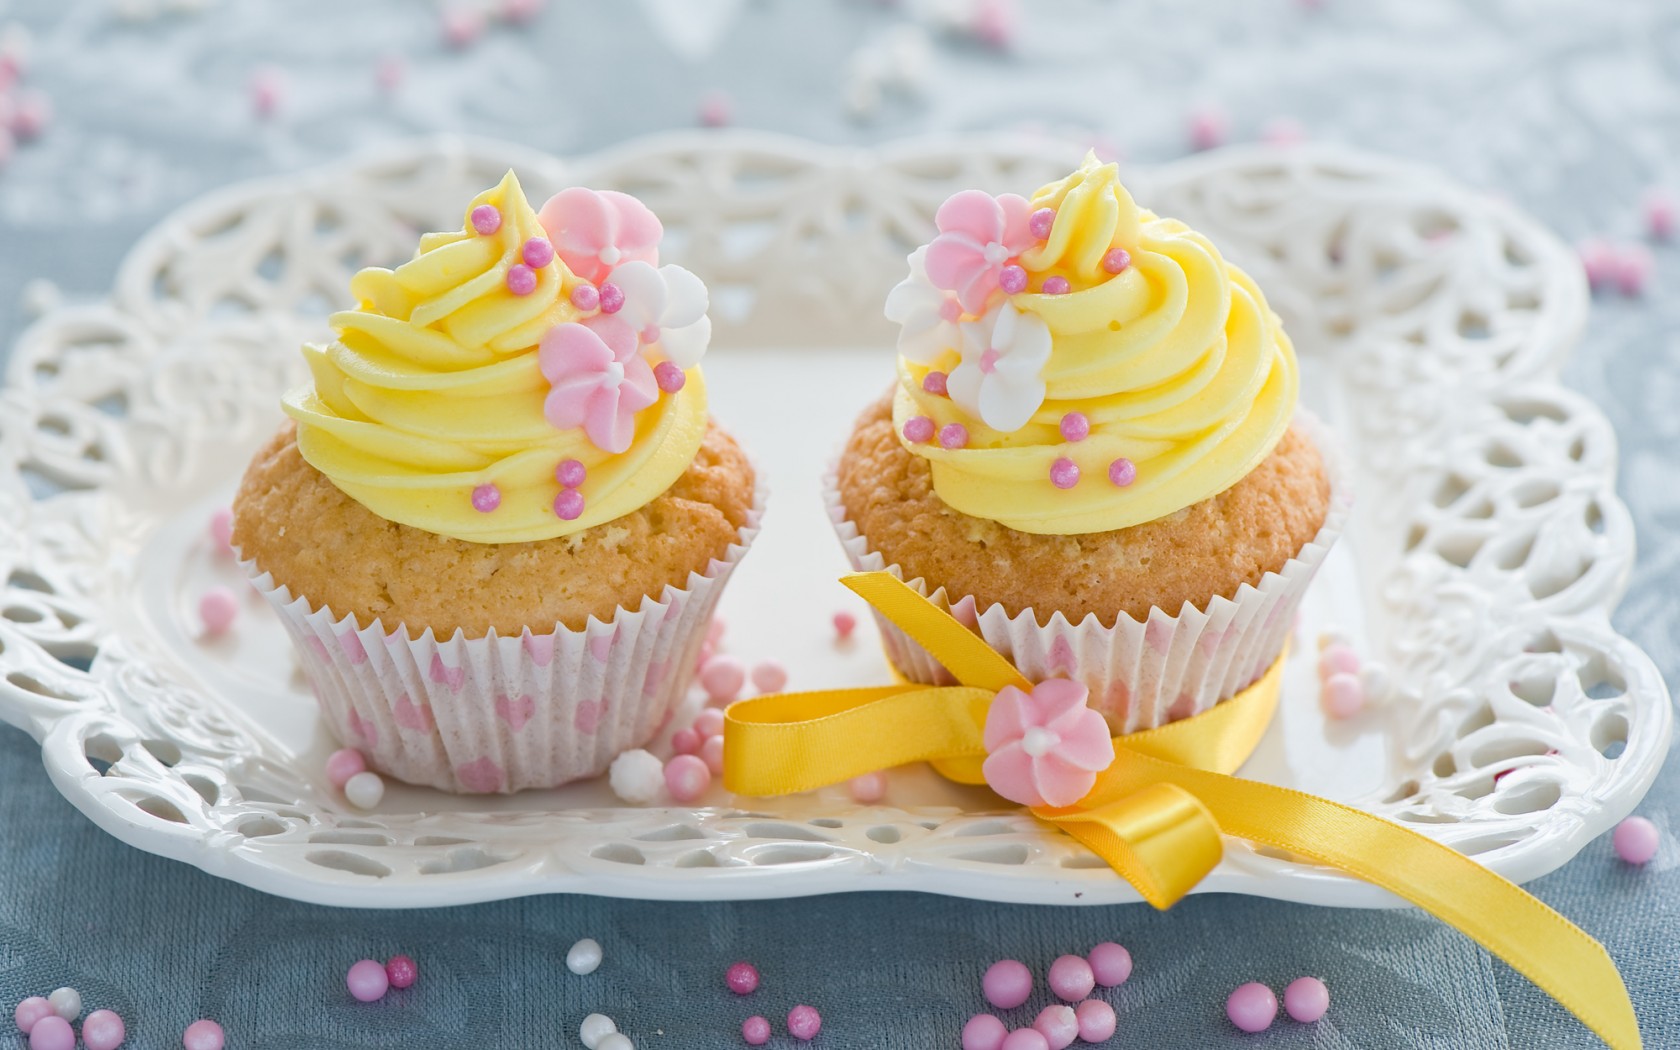 Cupcakes - Food Wallpaper (35554312) - Fanpop